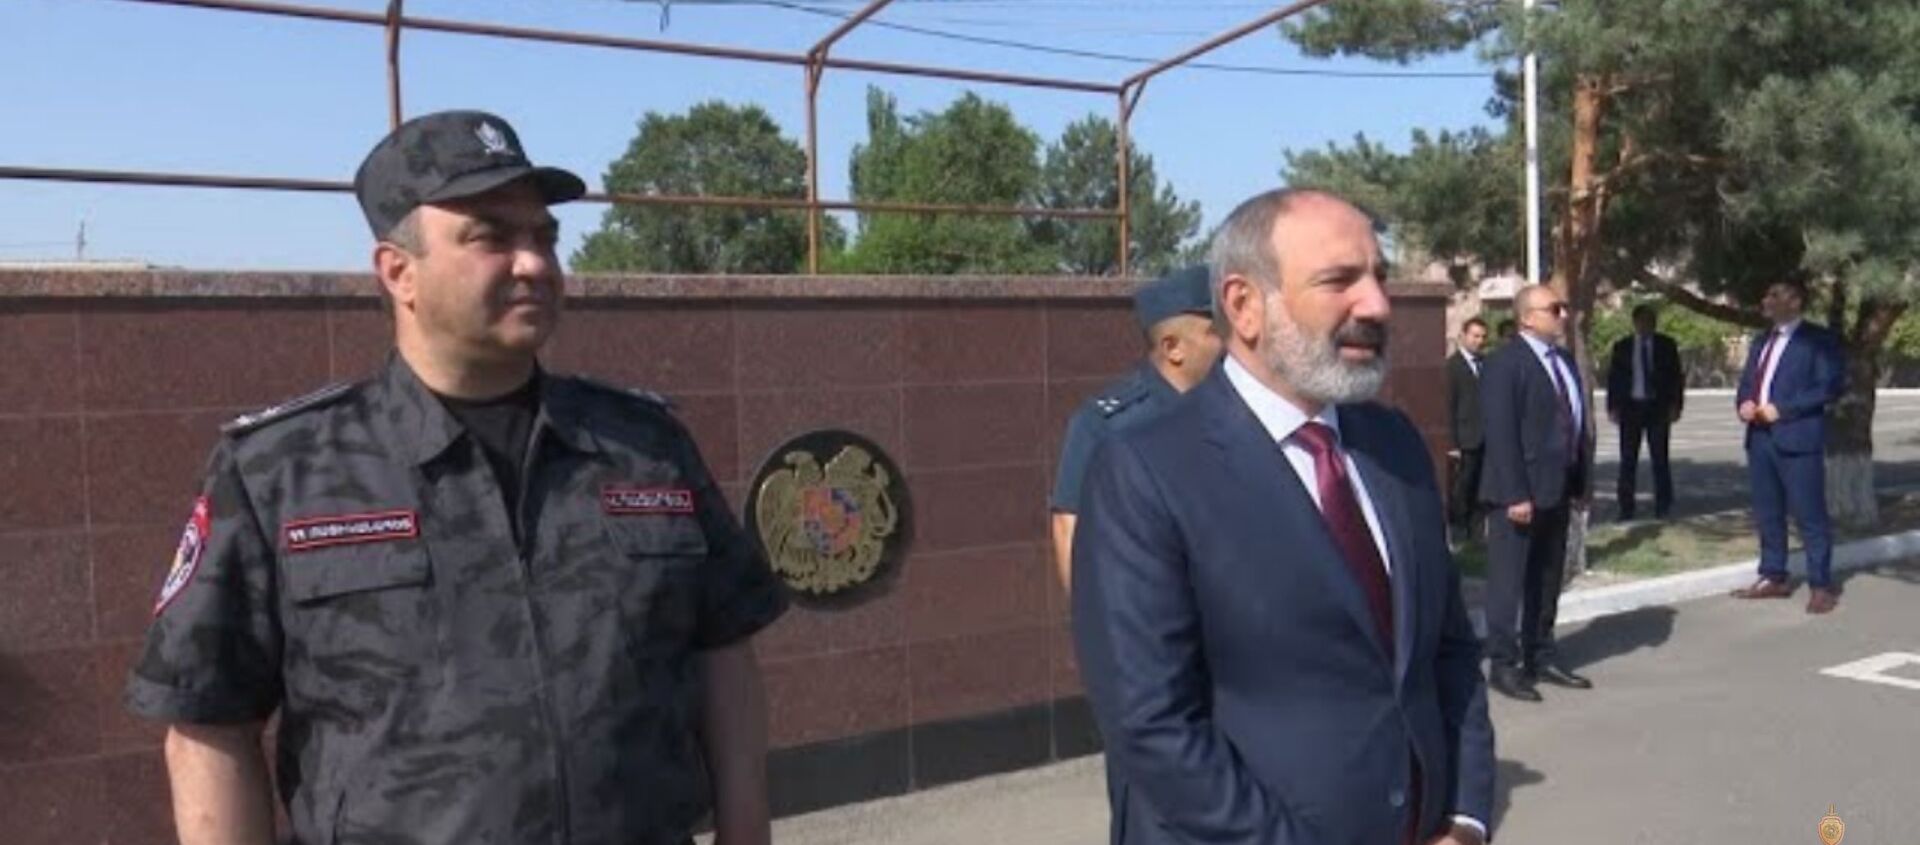 ՀՀ վարչապետի պաշտոնակատարն այցելել է ոստիկանության կրթահամալիր - Sputnik Армения, 1920, 24.06.2021